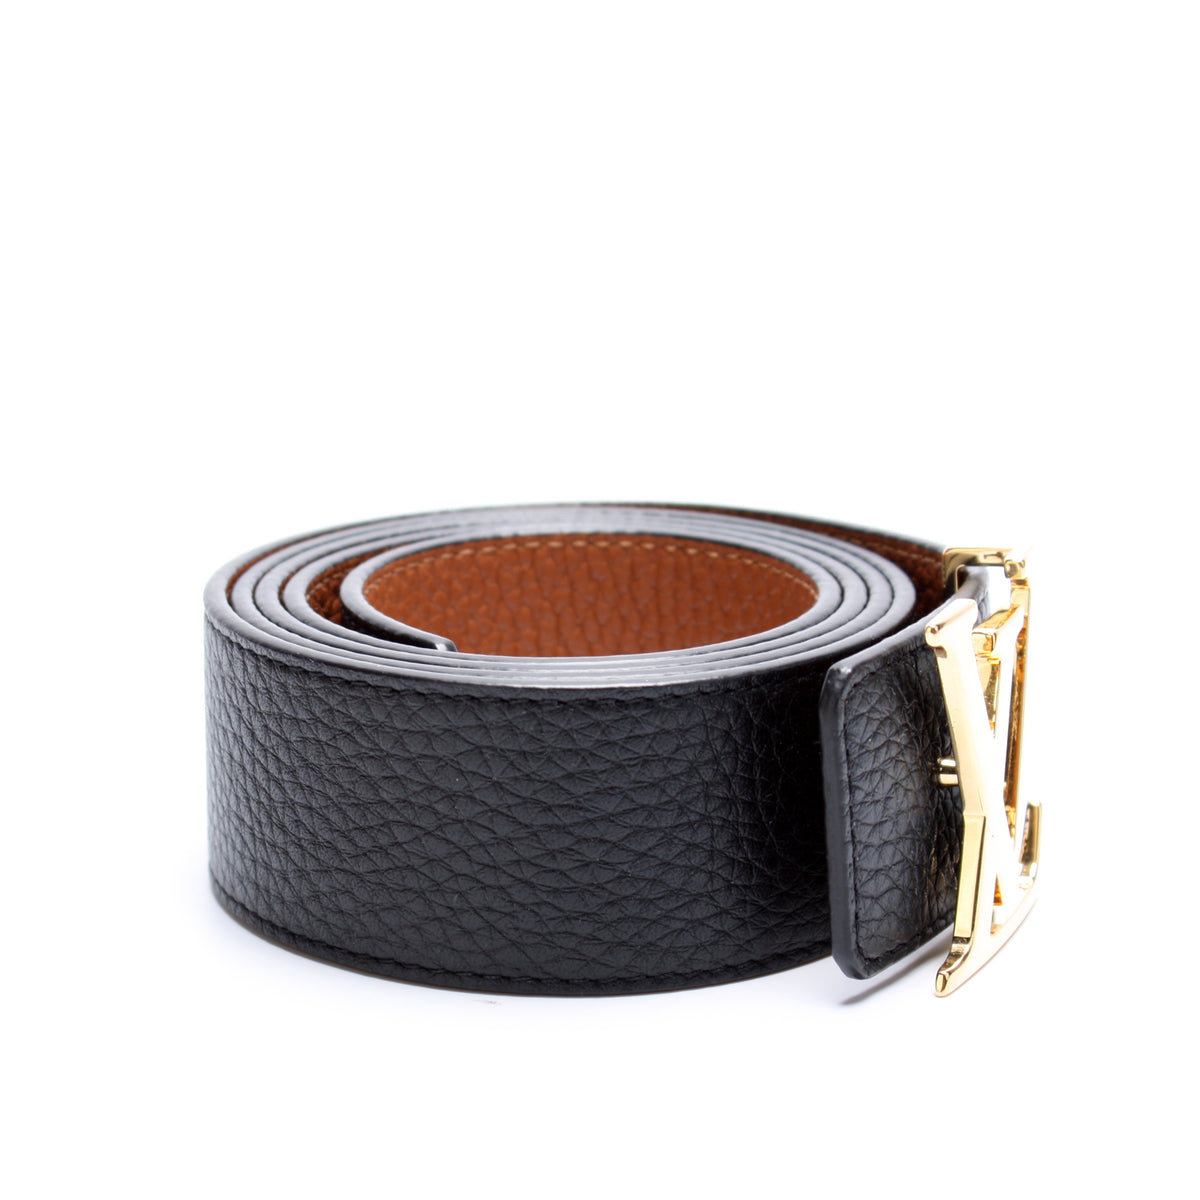 Louis Vuitton LV Initiales 40mm Reversible Belt Black Grey Leather. Size 110 cm